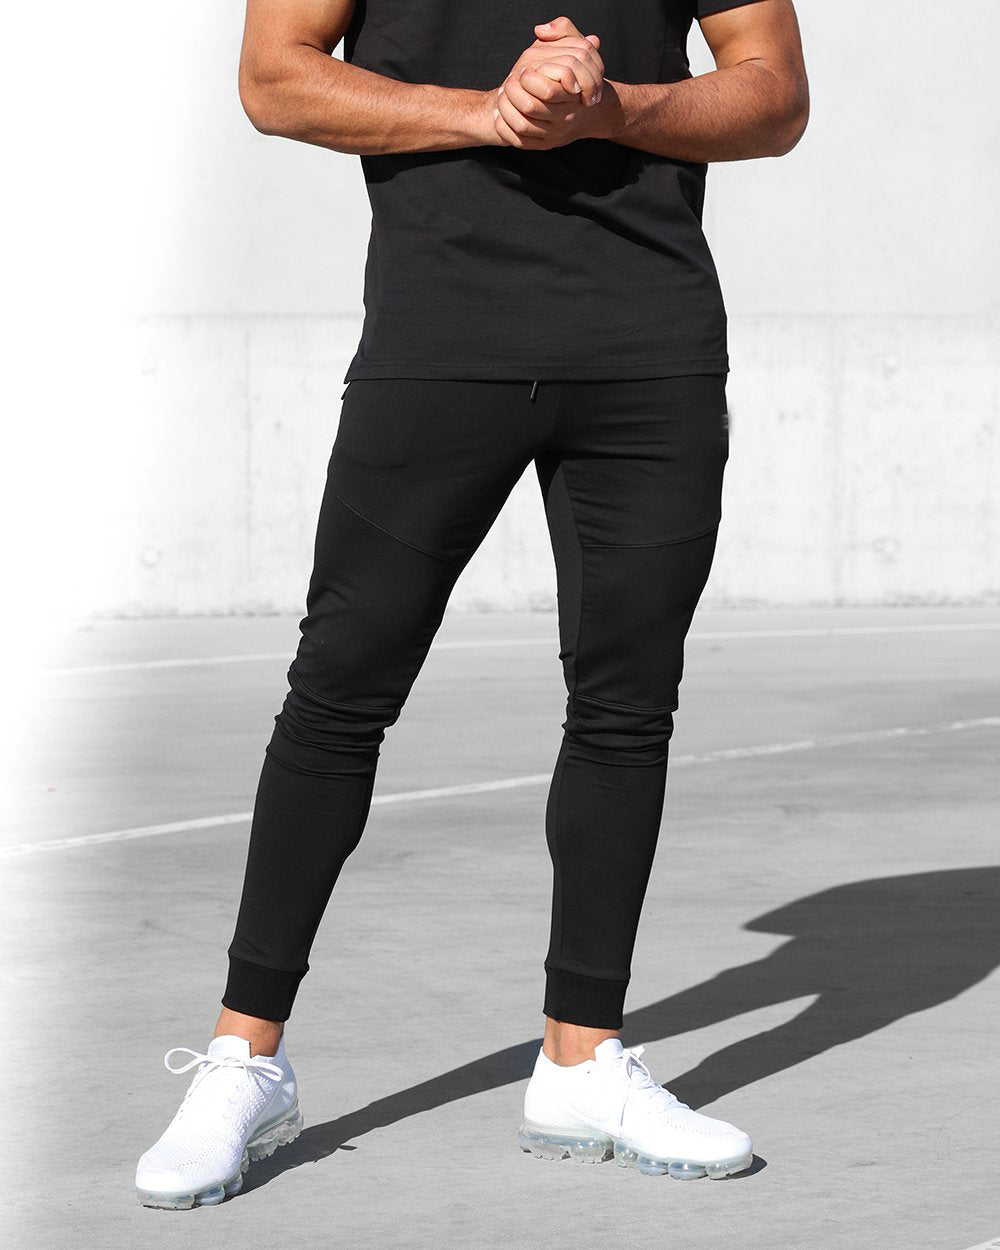 Fab Aussie Men's Gym/Joggers pants - Black